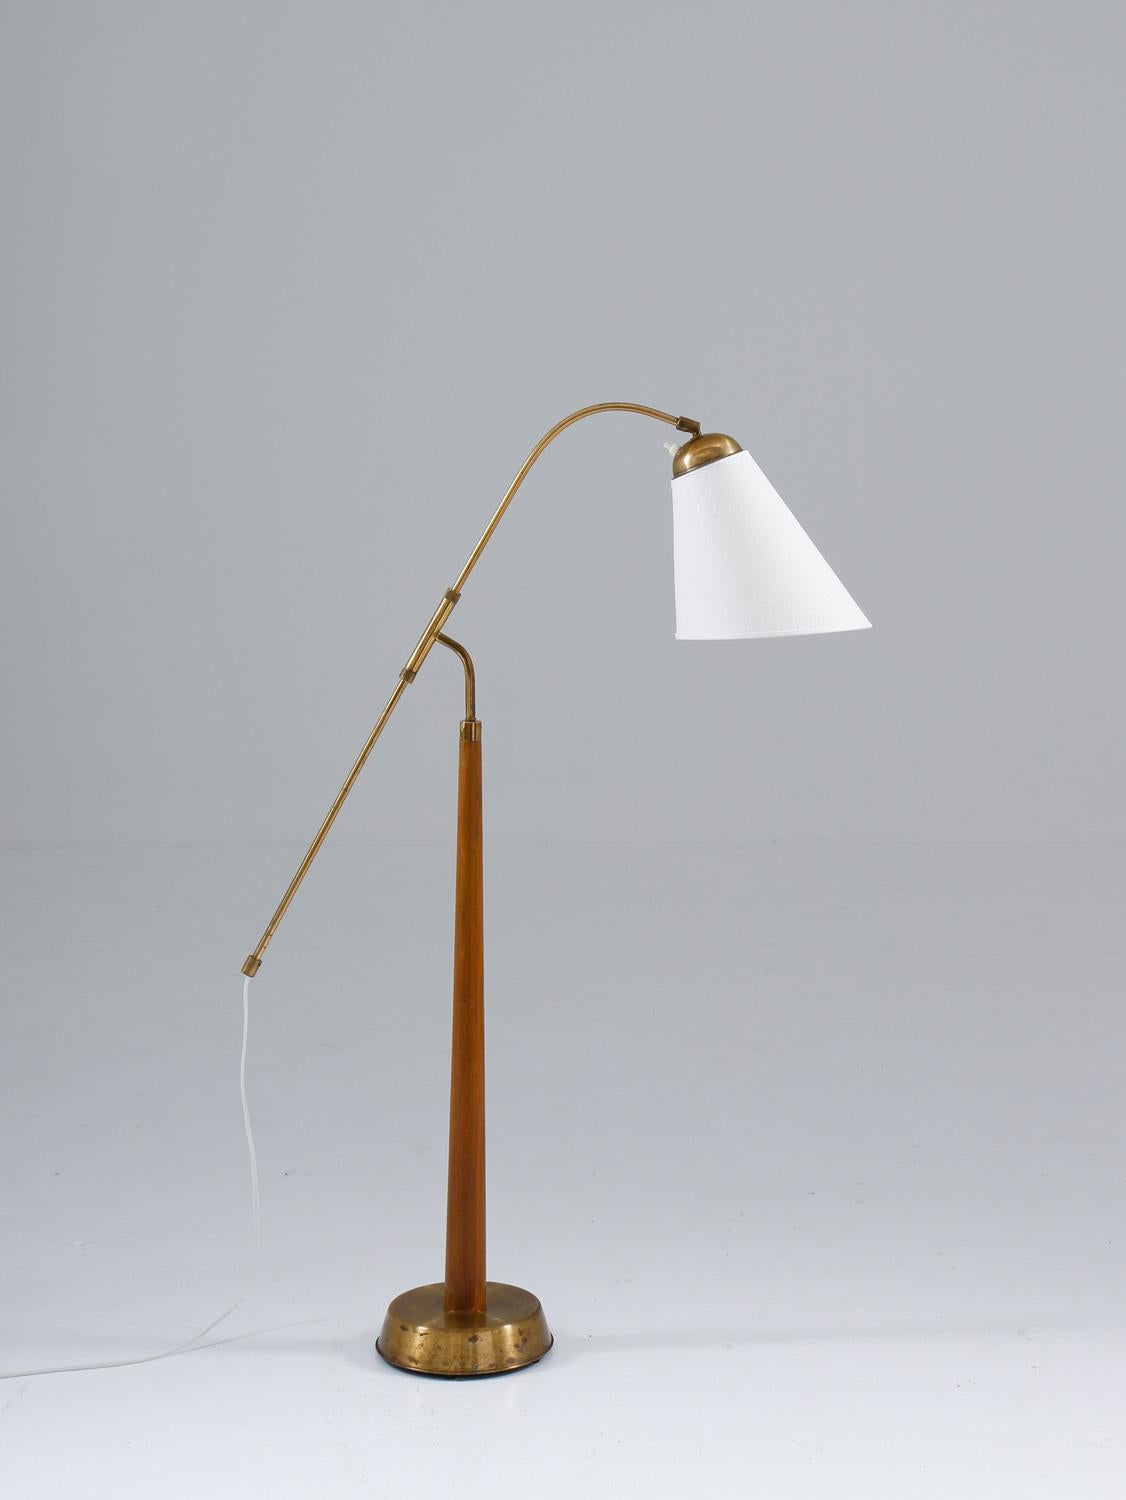 Très rare lampadaire modèle 512/1 en laiton et bois par Ystad Metall, Suède.
C'est l'une des rares lampes produites par Ystad Metall. La lampe se compose d'une base en laiton et en bois, supportant une tige en laiton réglable en hauteur. 

La